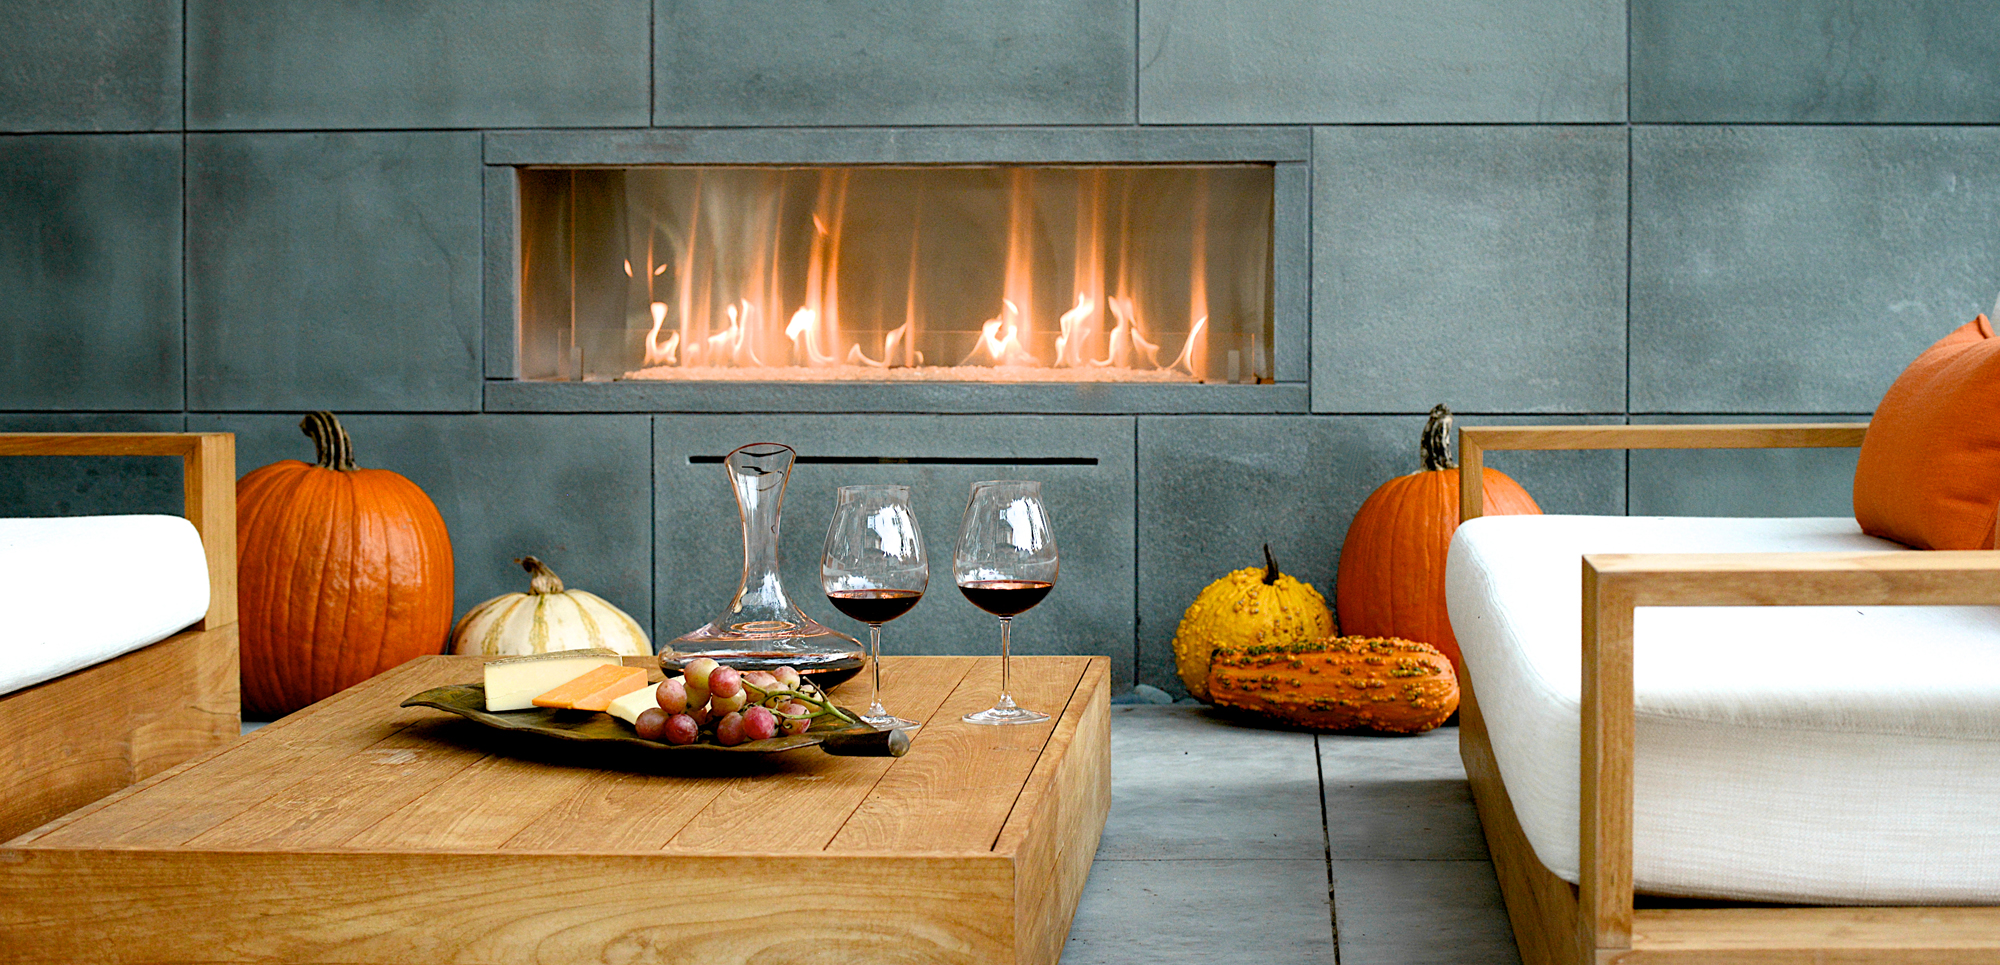 Fireplace On Tv Screen Inspirational Spark Modern Fires